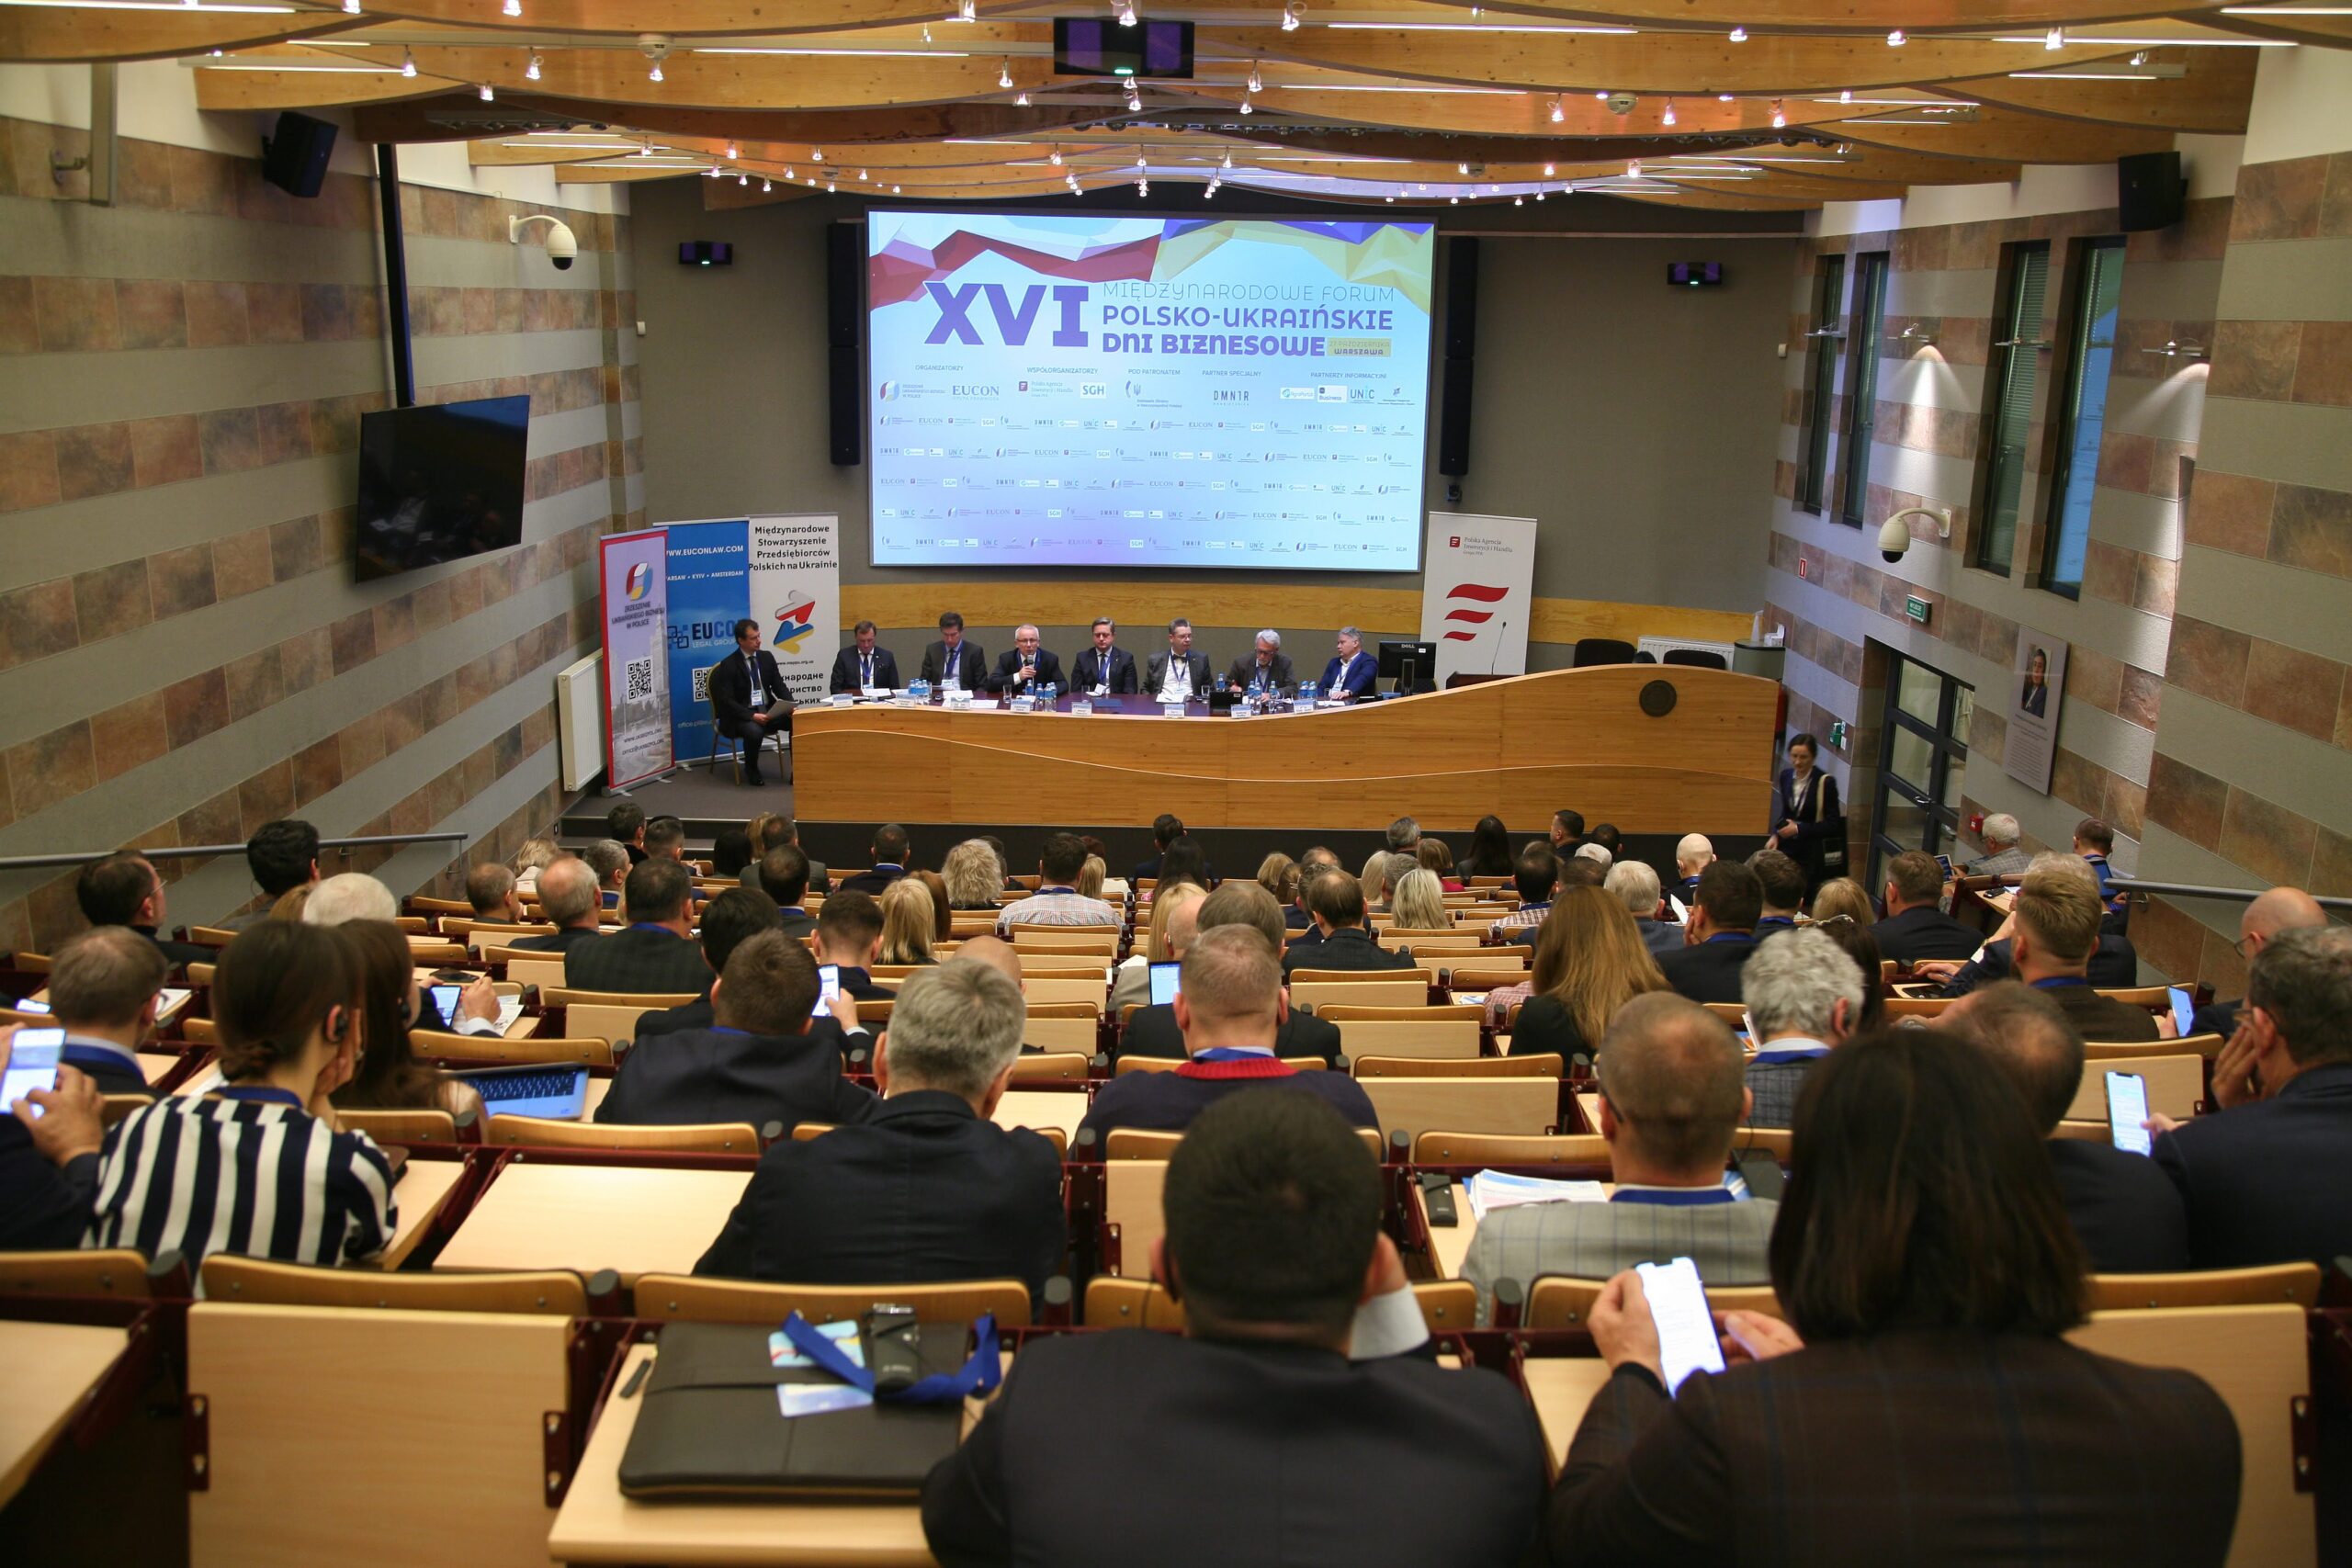 Синергия во имя победы, восстановления и будущего: в Варшаве состоялся ХVI Международный форум «Польско-украинские дни бизнеса»